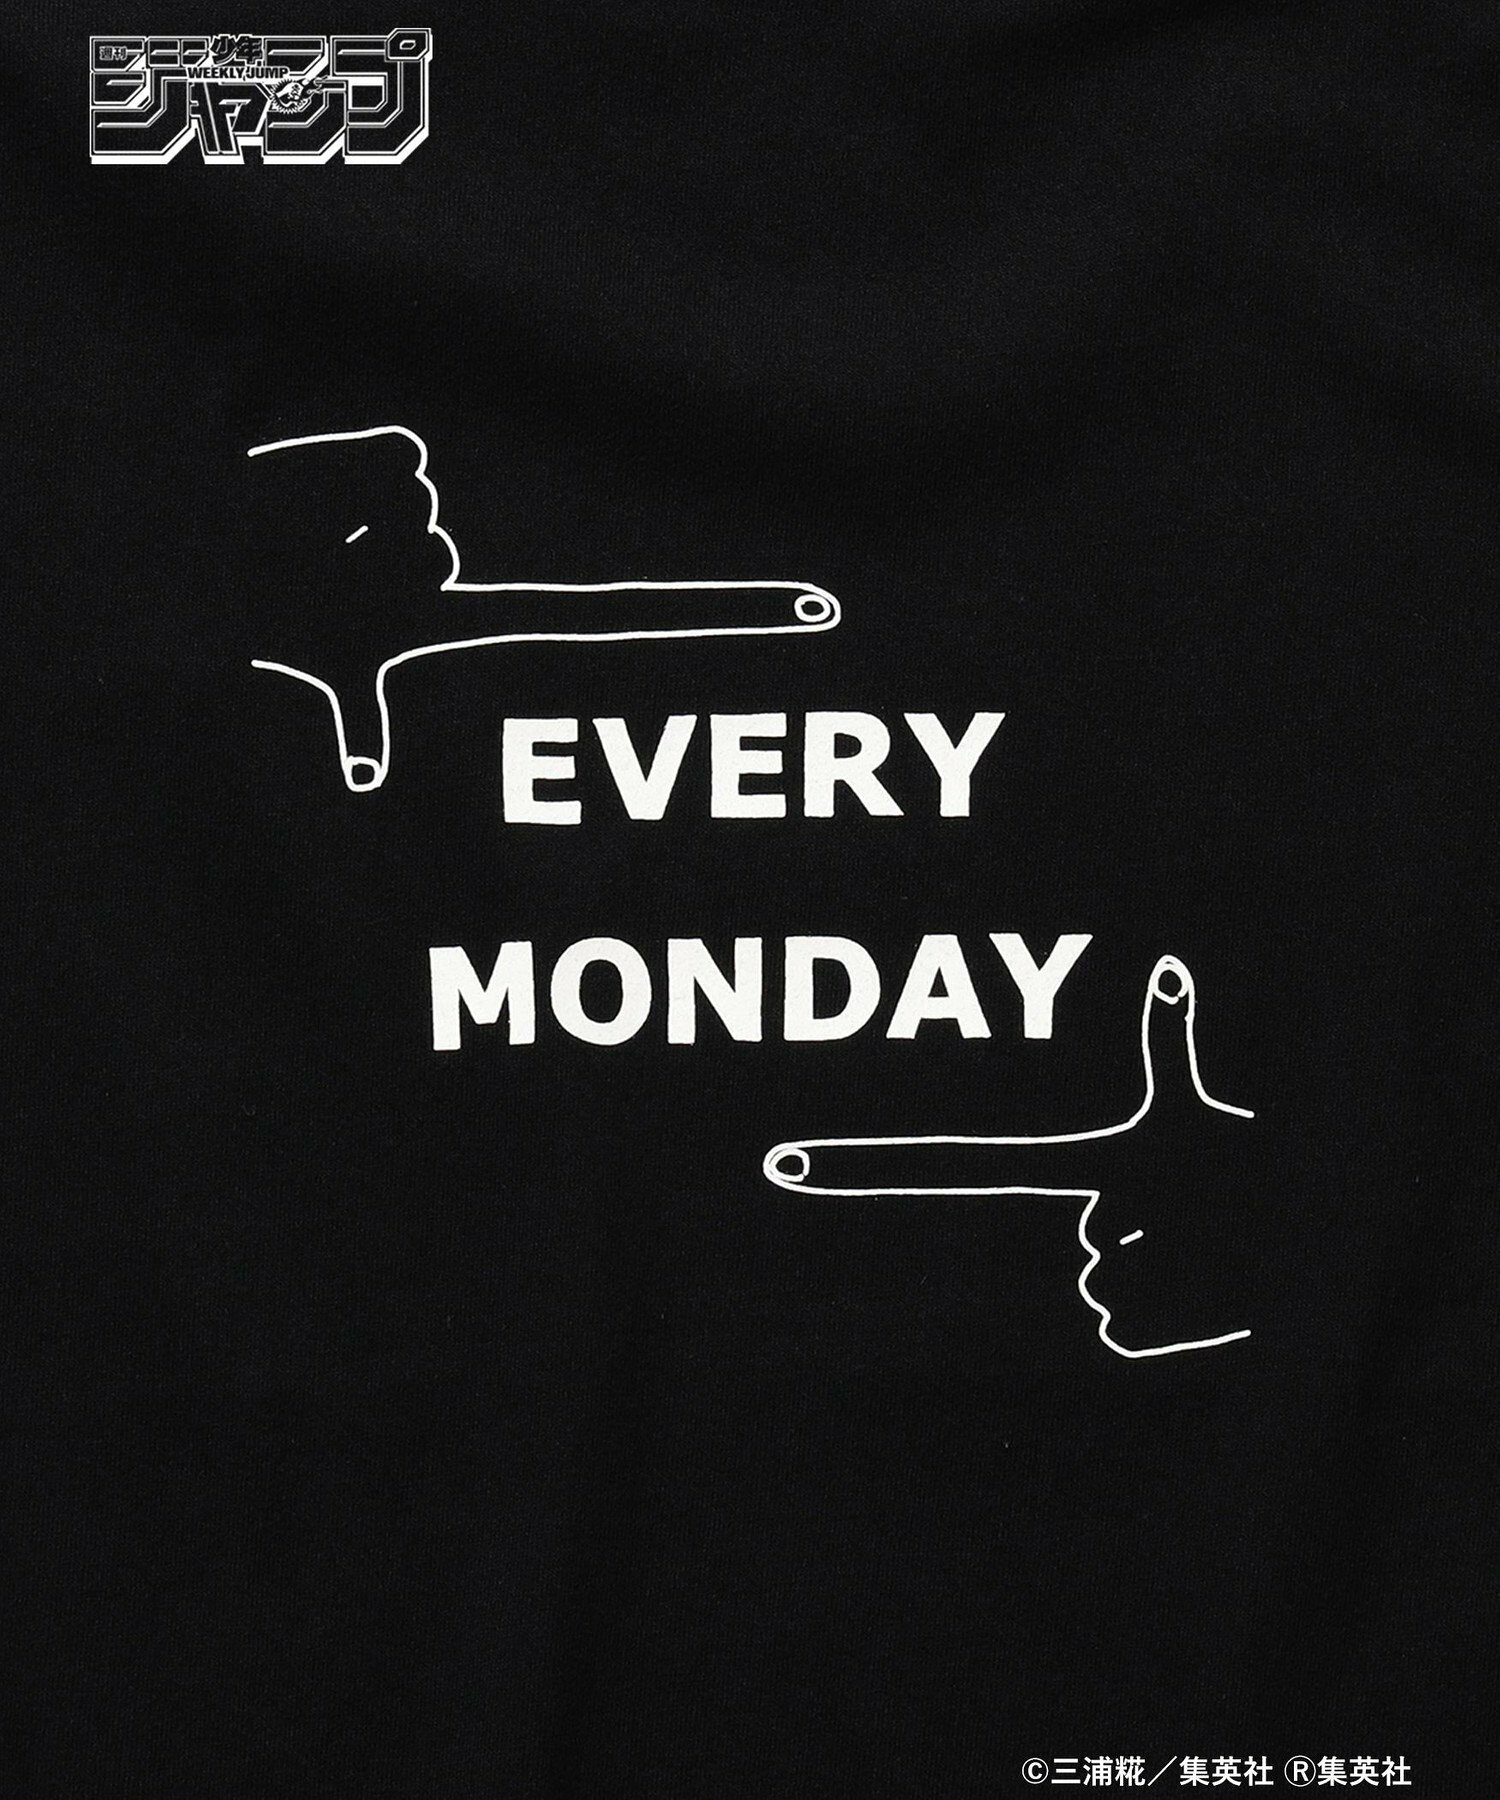 「週刊少年ジャンプ」* ビームス / アオのハコ "EVERY MONDAY" Tシャツ